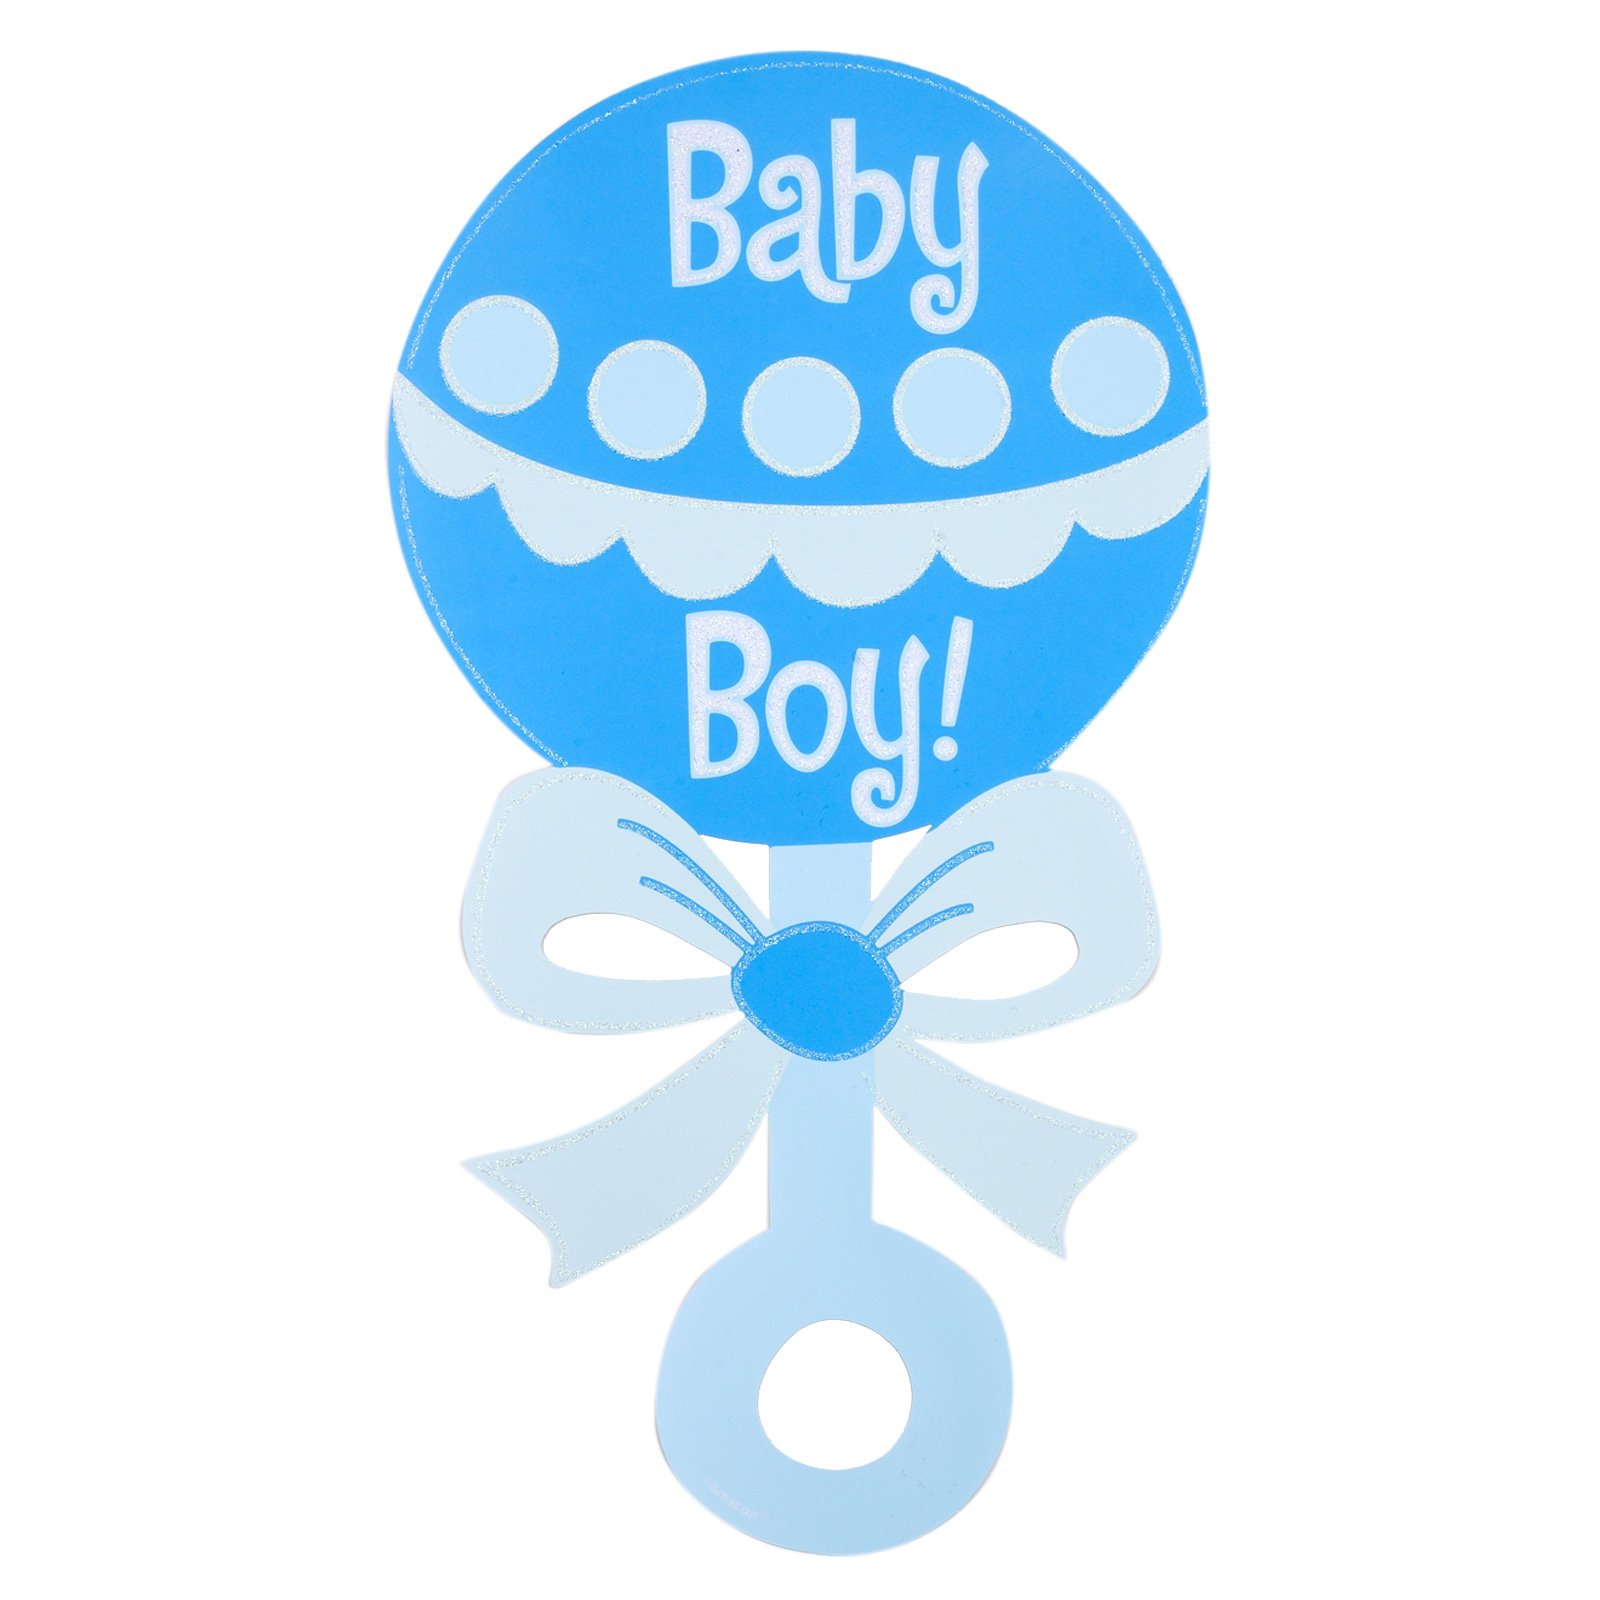 Baby boy congratulations clipart - ClipartFox